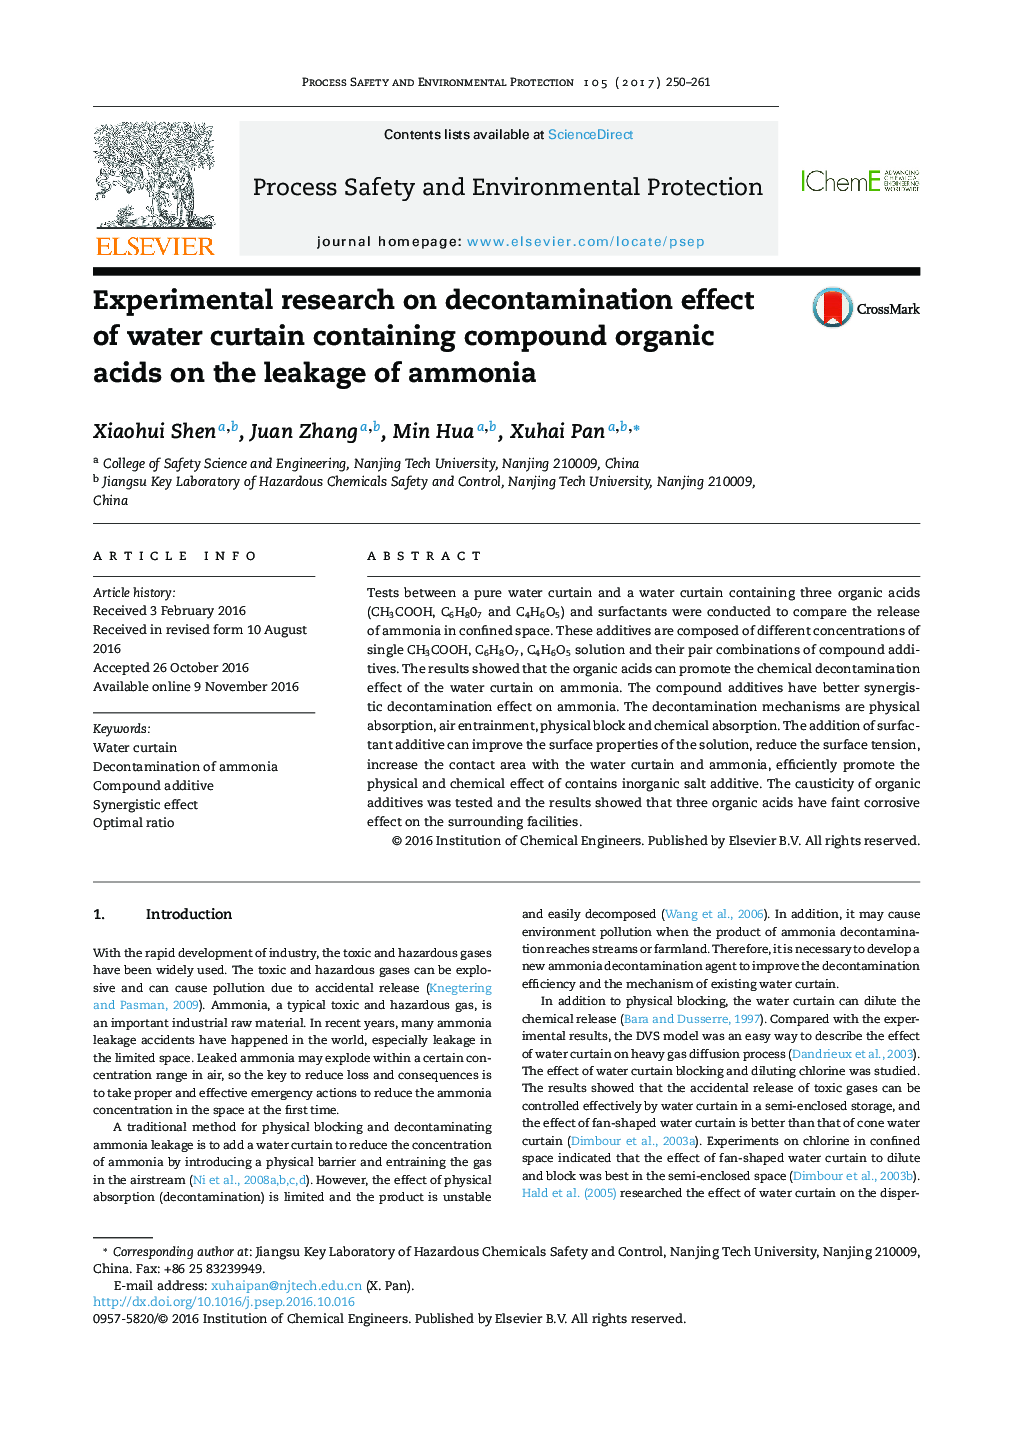 تحقیقات تجربی در مورد اثر ضدعفونی شدن پرده آبی حاوی اسیدهای ارگانیک ترکیبی در نشت آمونیاک 